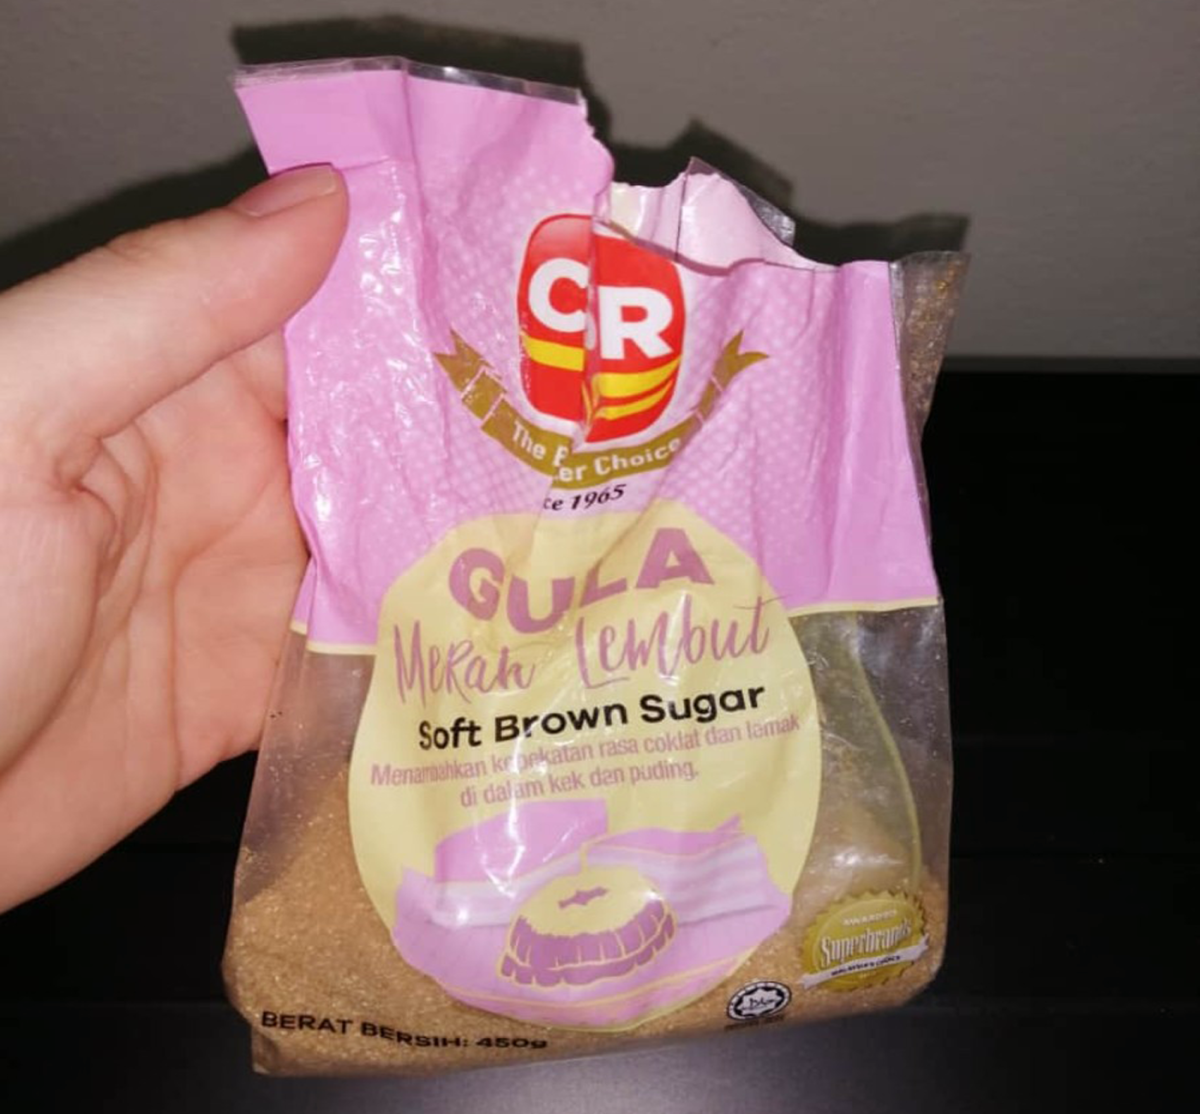 Soft Brown Sugar - Healthier alternative to white sugar 